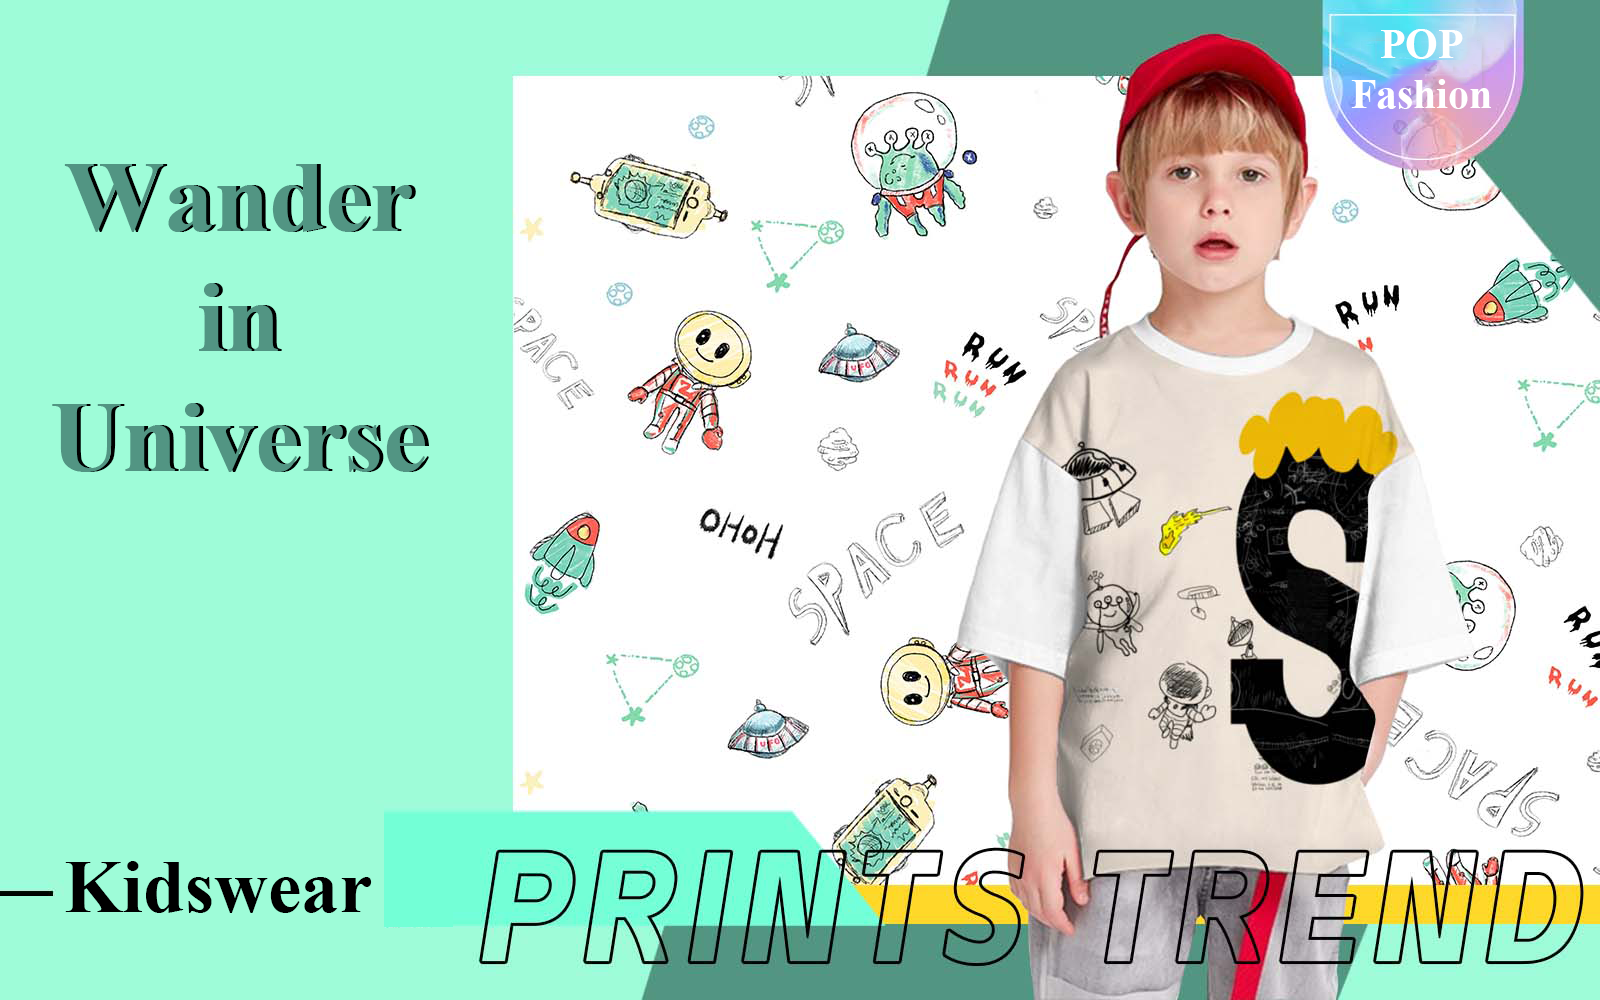 Wander in Universe -- The Pattern Trend for Kidswear